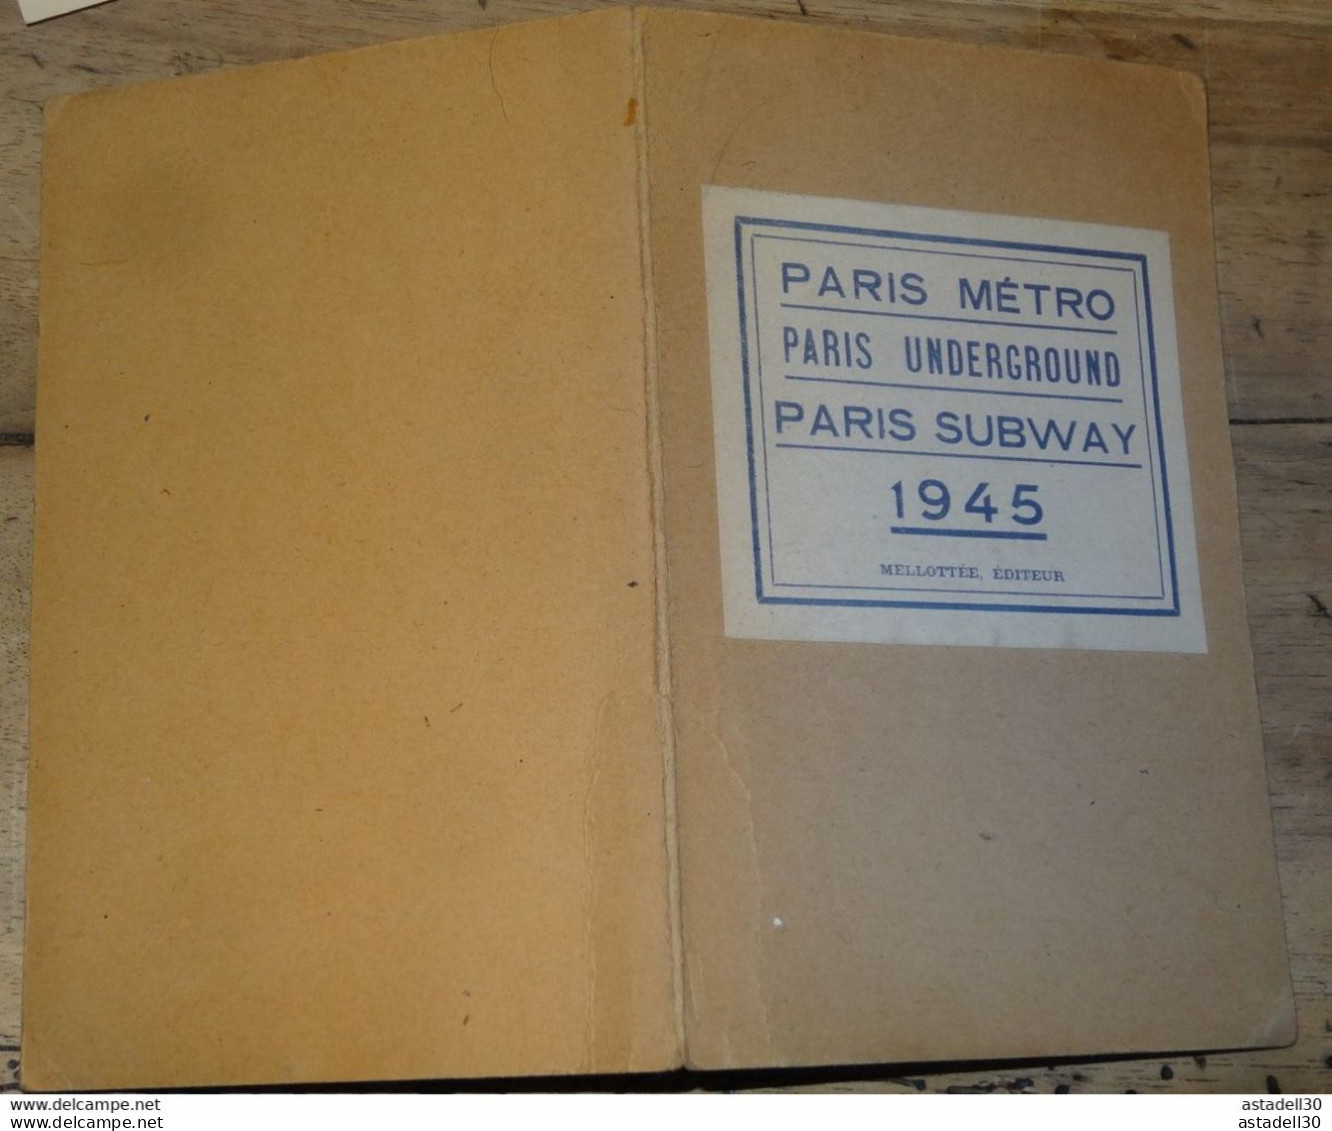 Plan Du METRO De Paris 1945 , Paris Underground  Subway 1945 Melottée éditeur ........ PHI..........CL-7-5 - Europe